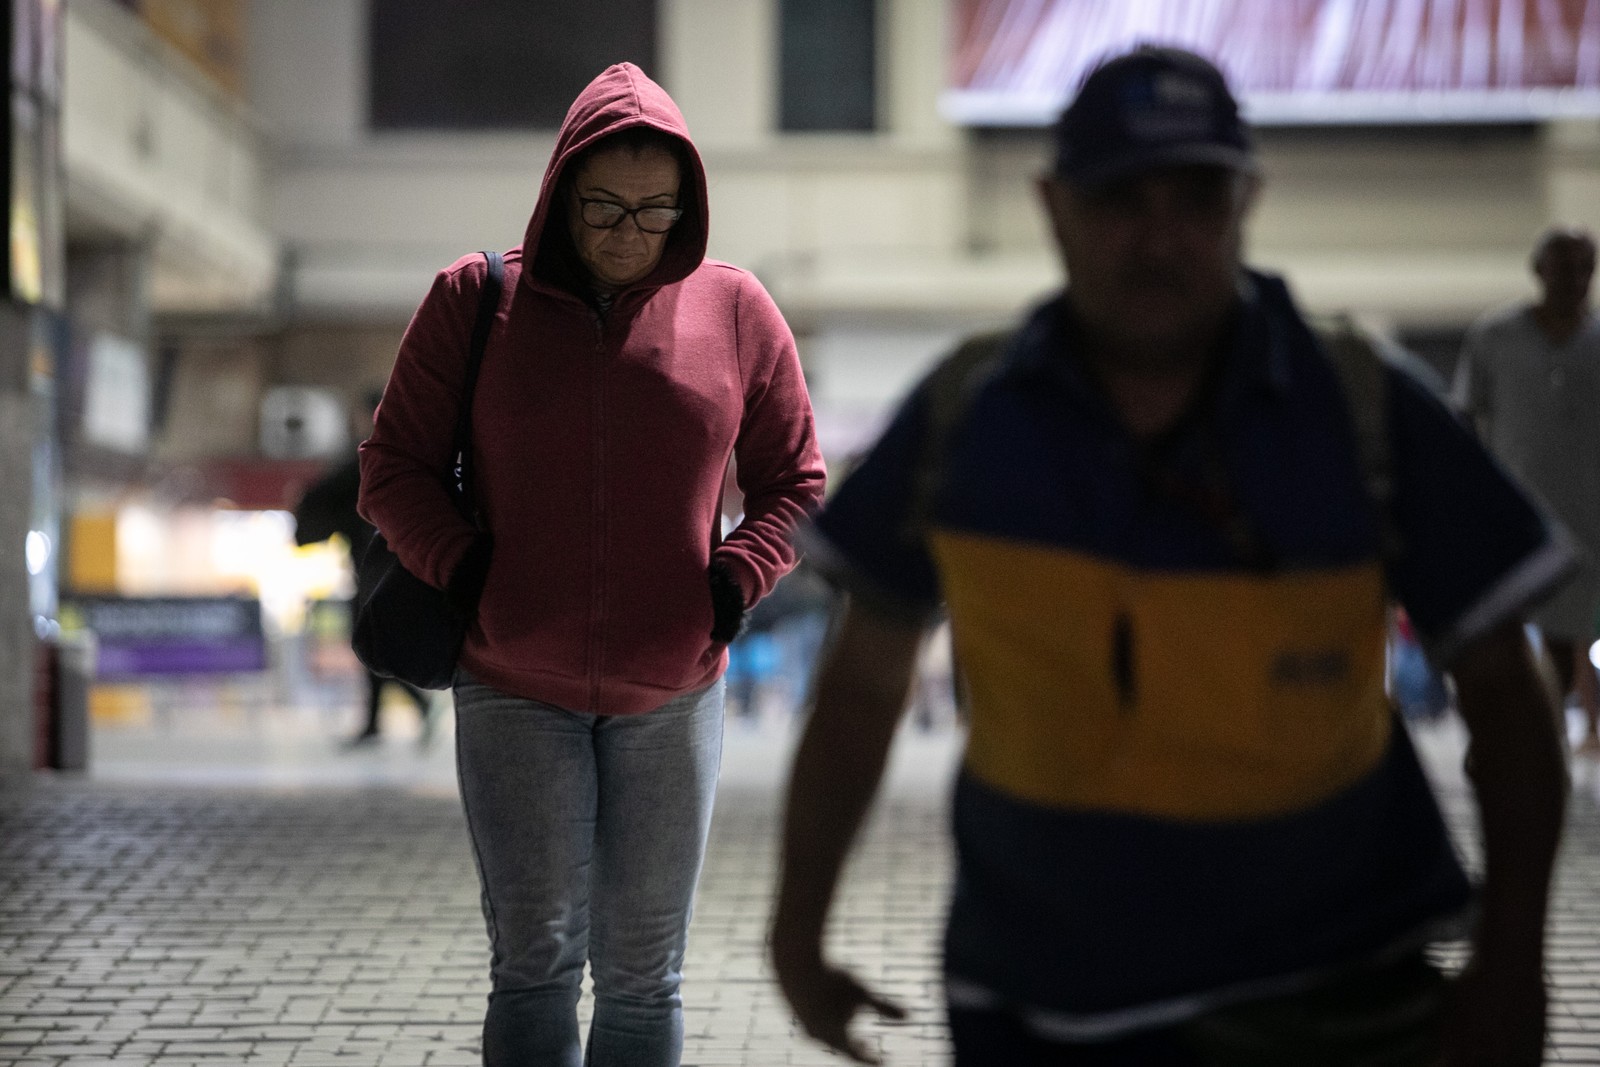 Frente fria mudou completamente o look carioca — Foto: Brenno Carvalho / Agência O Globo